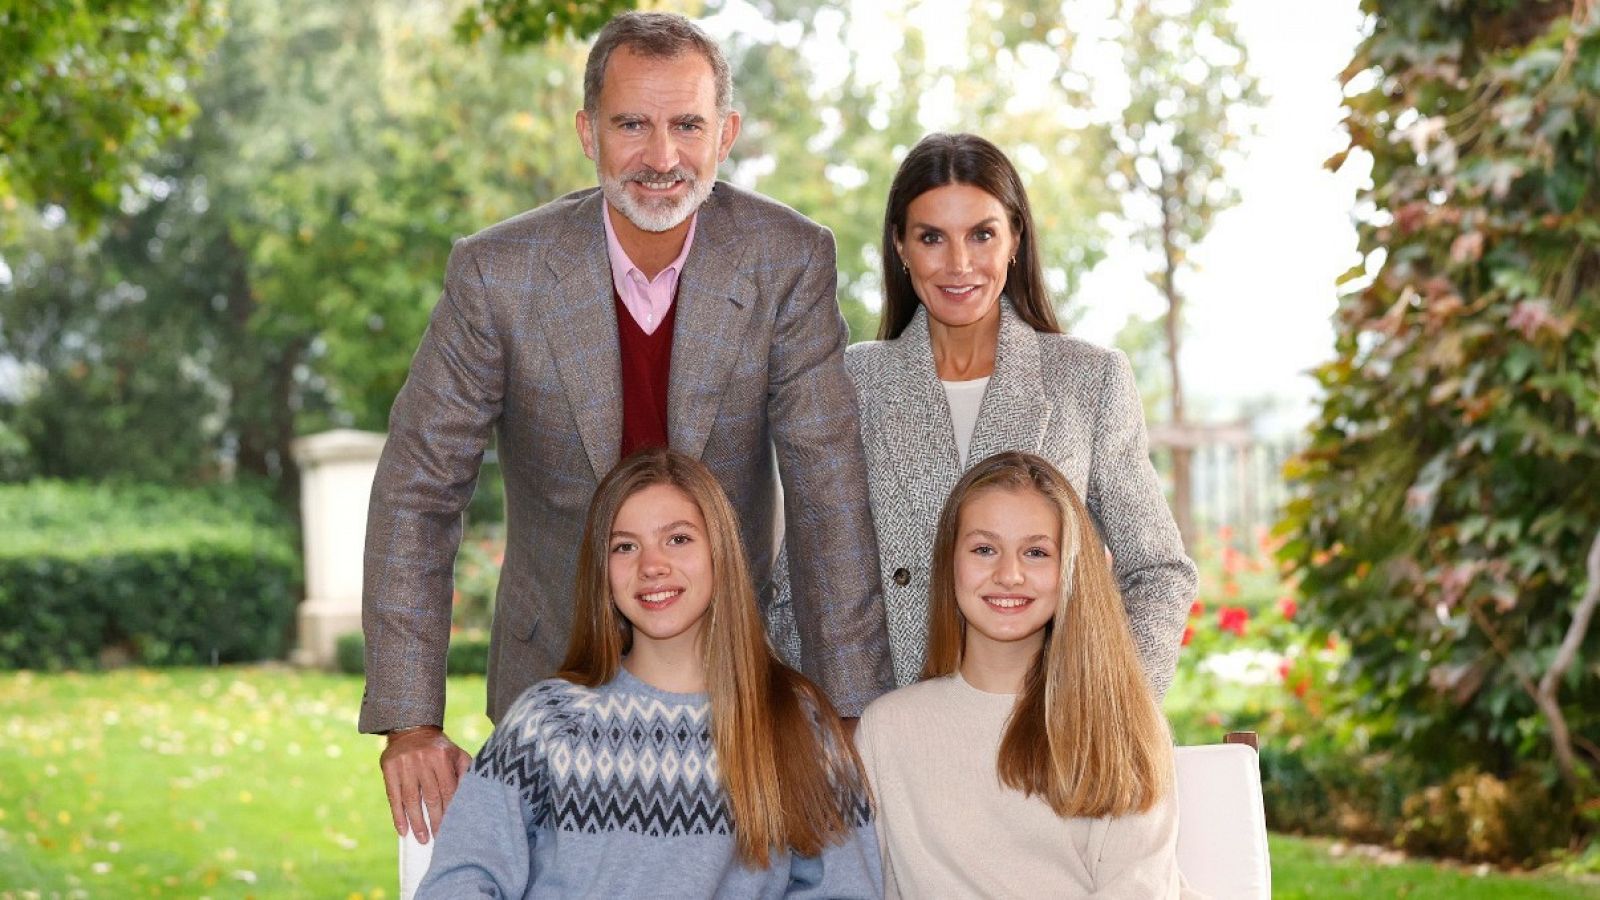 Los reyes felicitan la Navidad con una foto junto a sus hijas desde el jardín de su residencia 